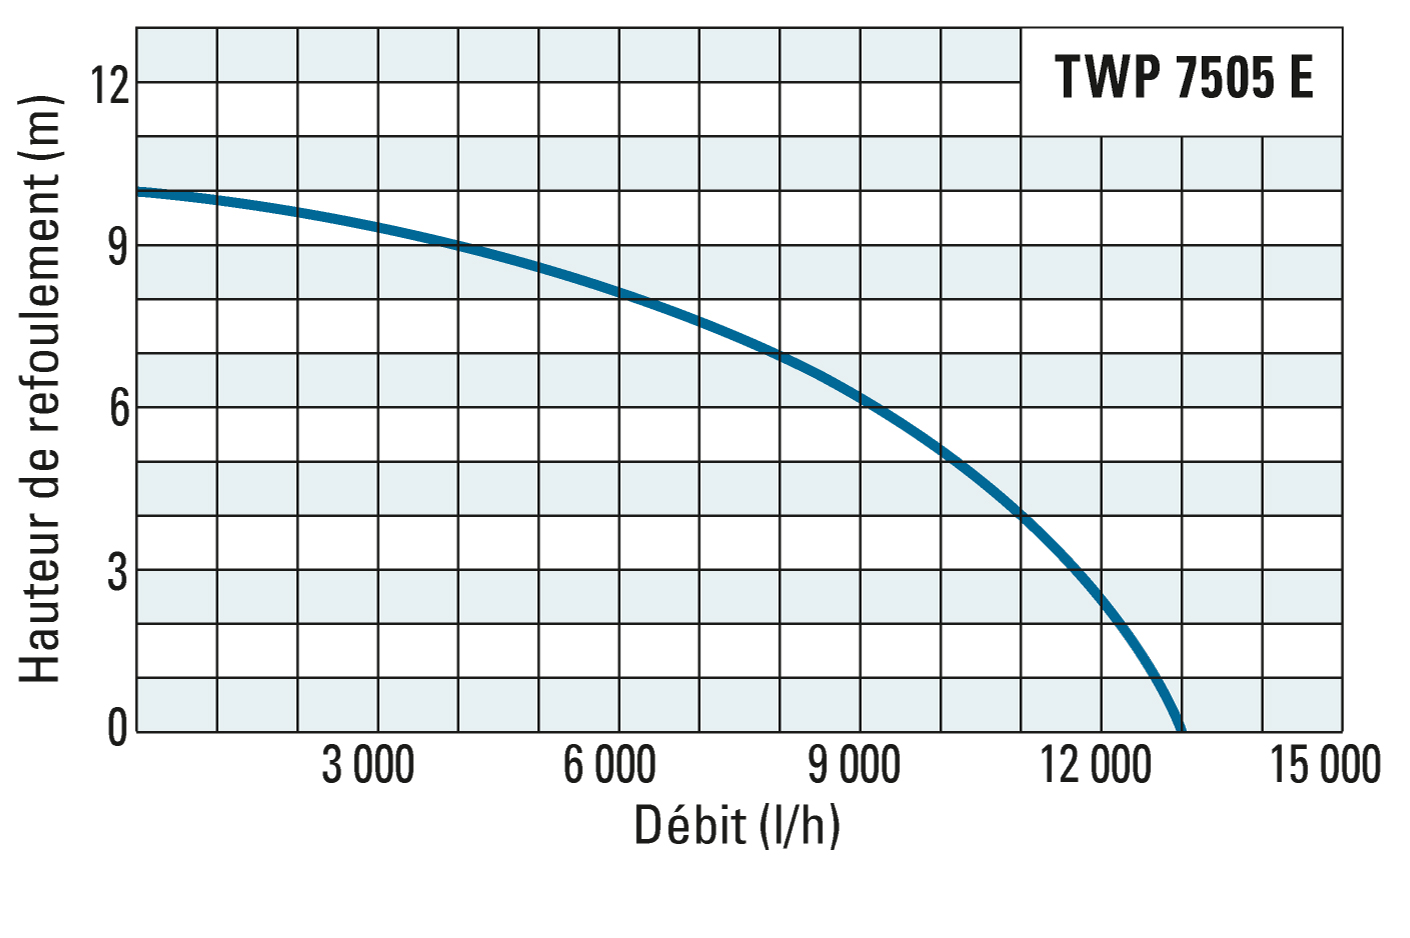 Hauteur de refoulement et débit de la TWP 7505 E